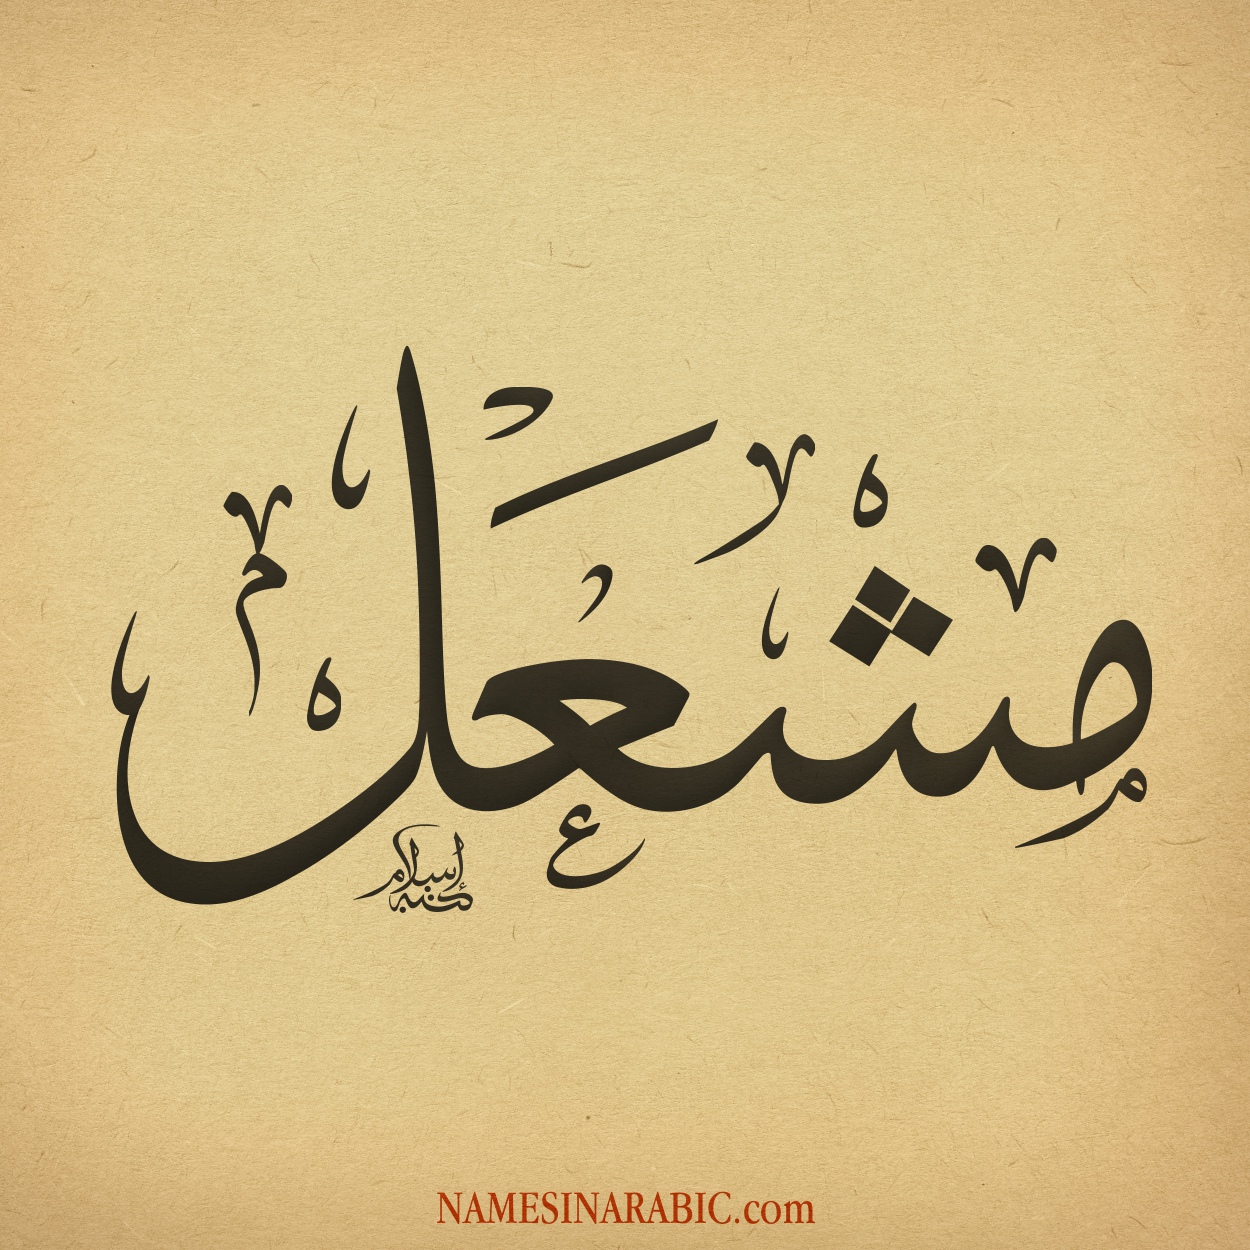 Mishal-Name-in-Arabic-Calligraphy.jpg